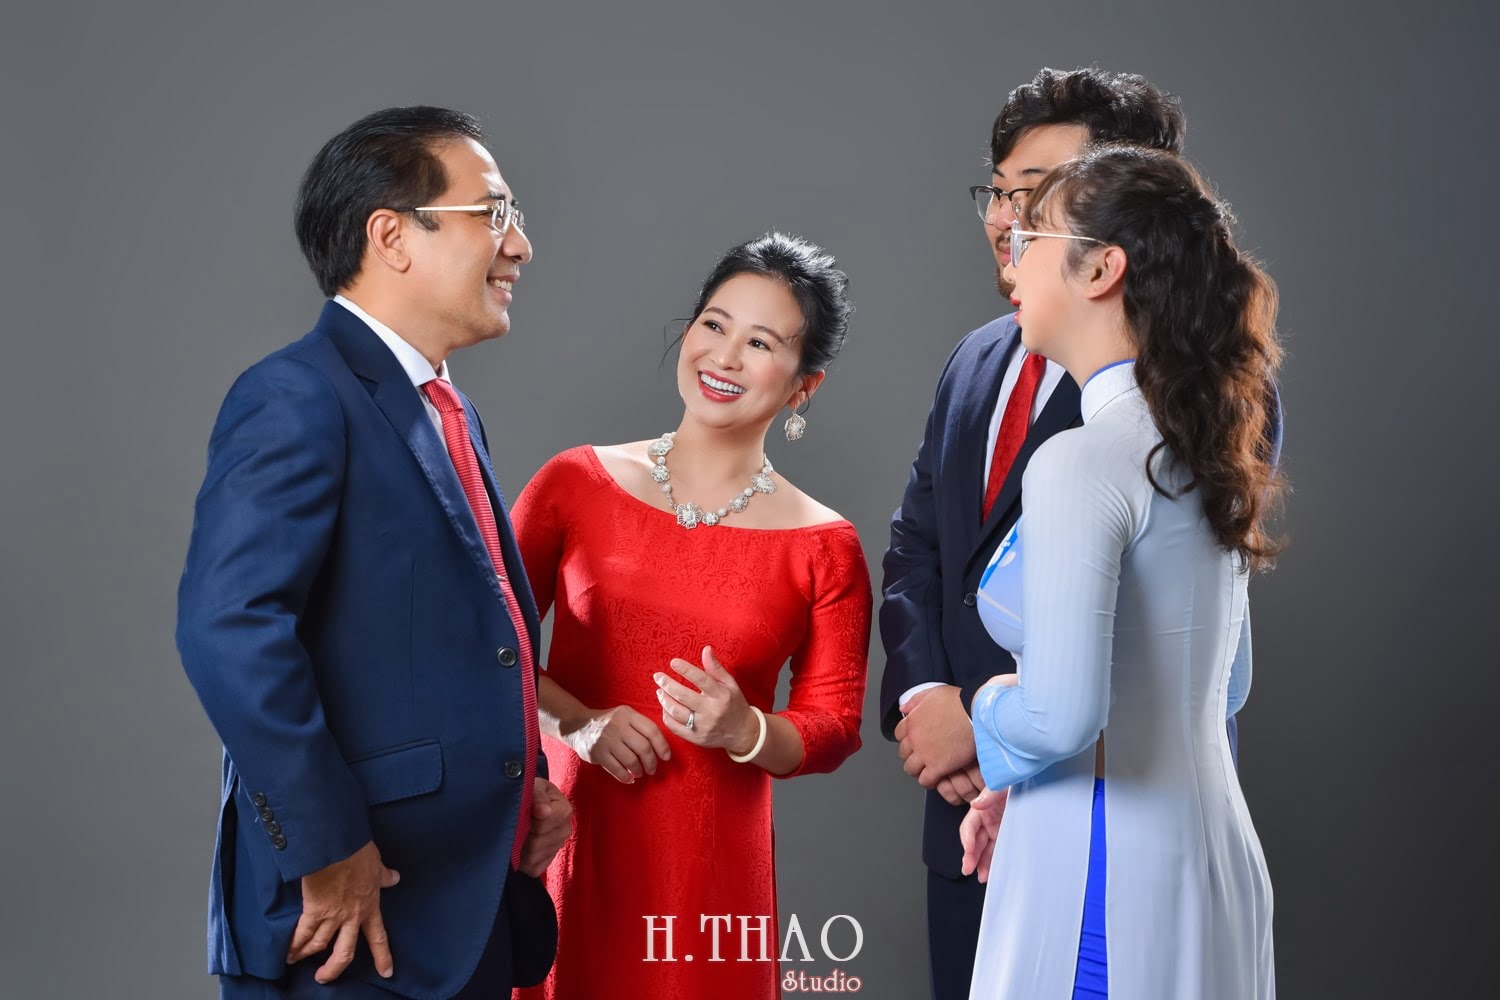 Anh gia dinh 4 nguoi 10 min - Dịch vụ chụp ảnh gia đình ngày tết giá rẻ tại Tp.HCM - HThao Studio